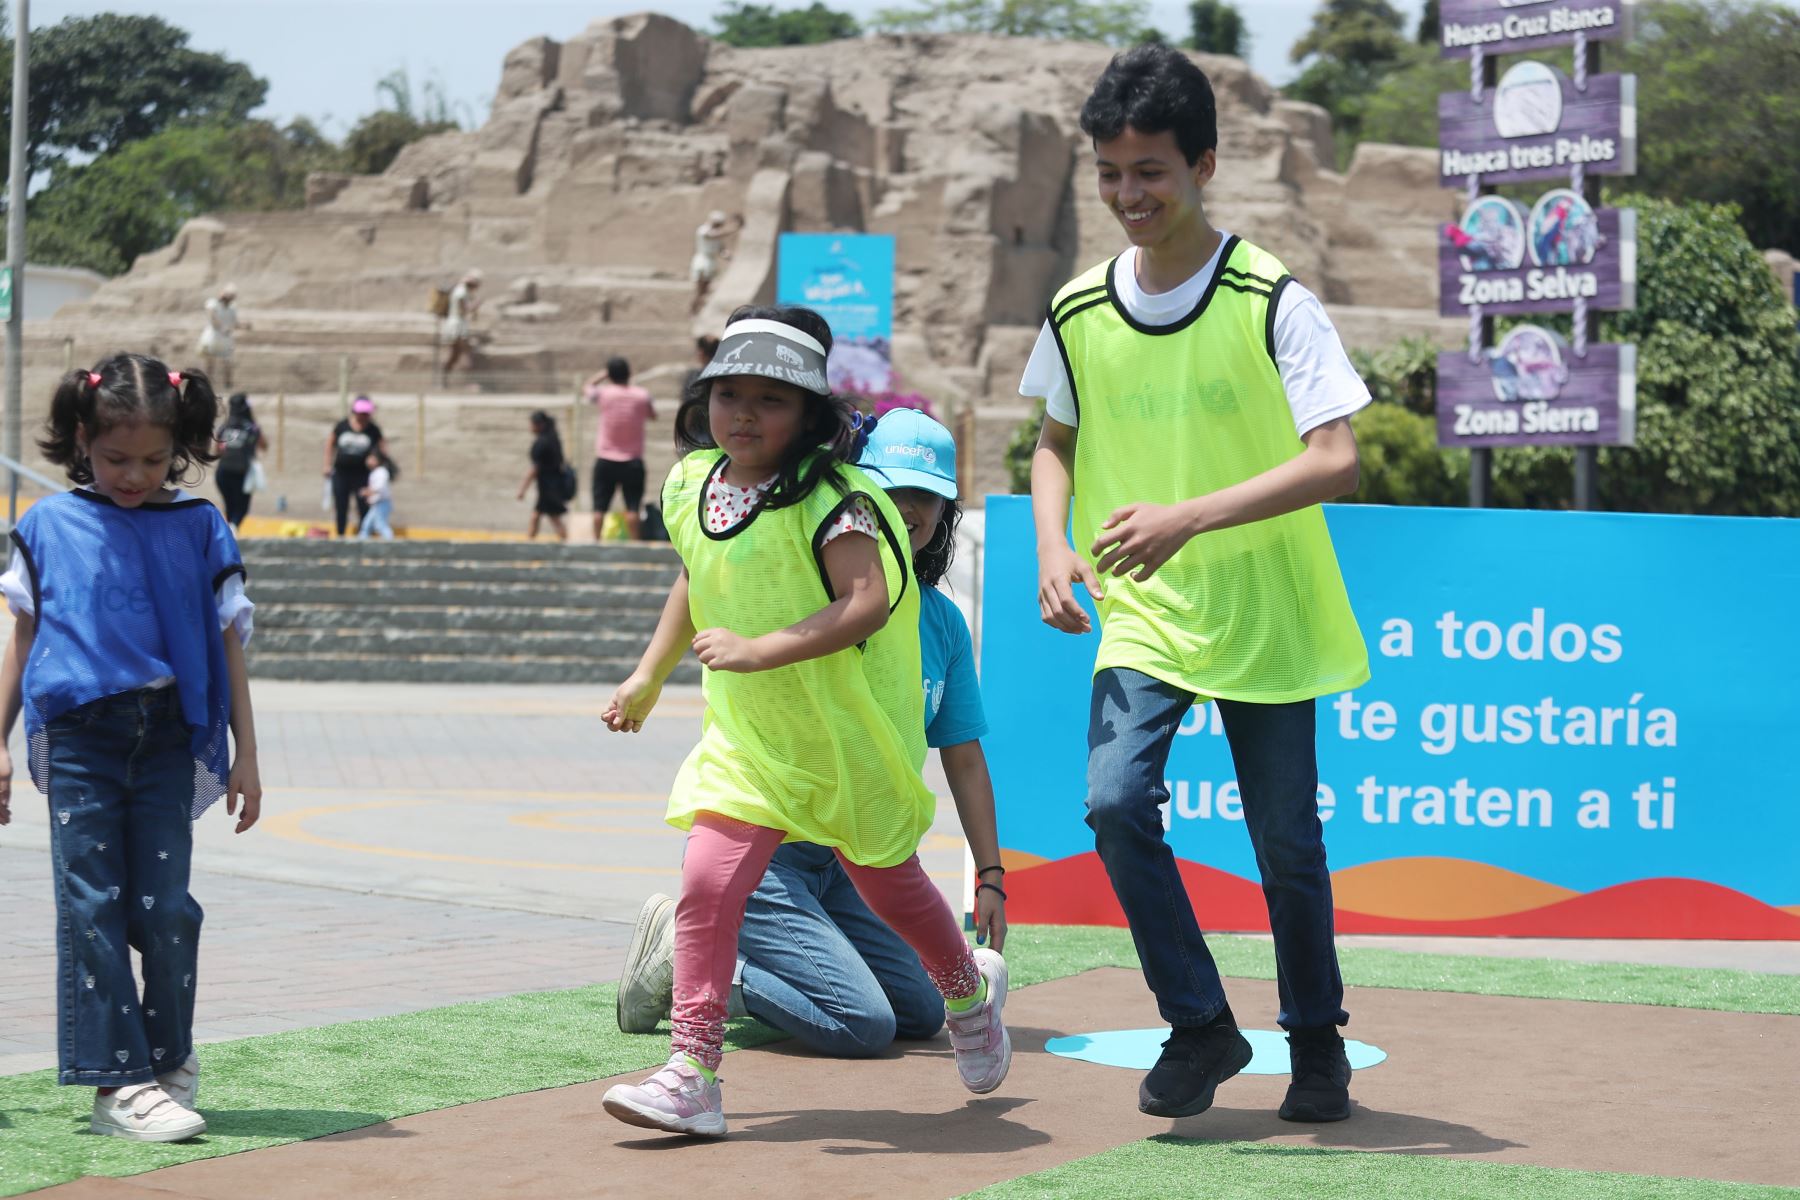 Unicef promociona campaña "Soy como tú" en una  jornada de juego que promueve la integración entre población peruana y migrante.
Foto: ANDINA/Ricardo Cuba